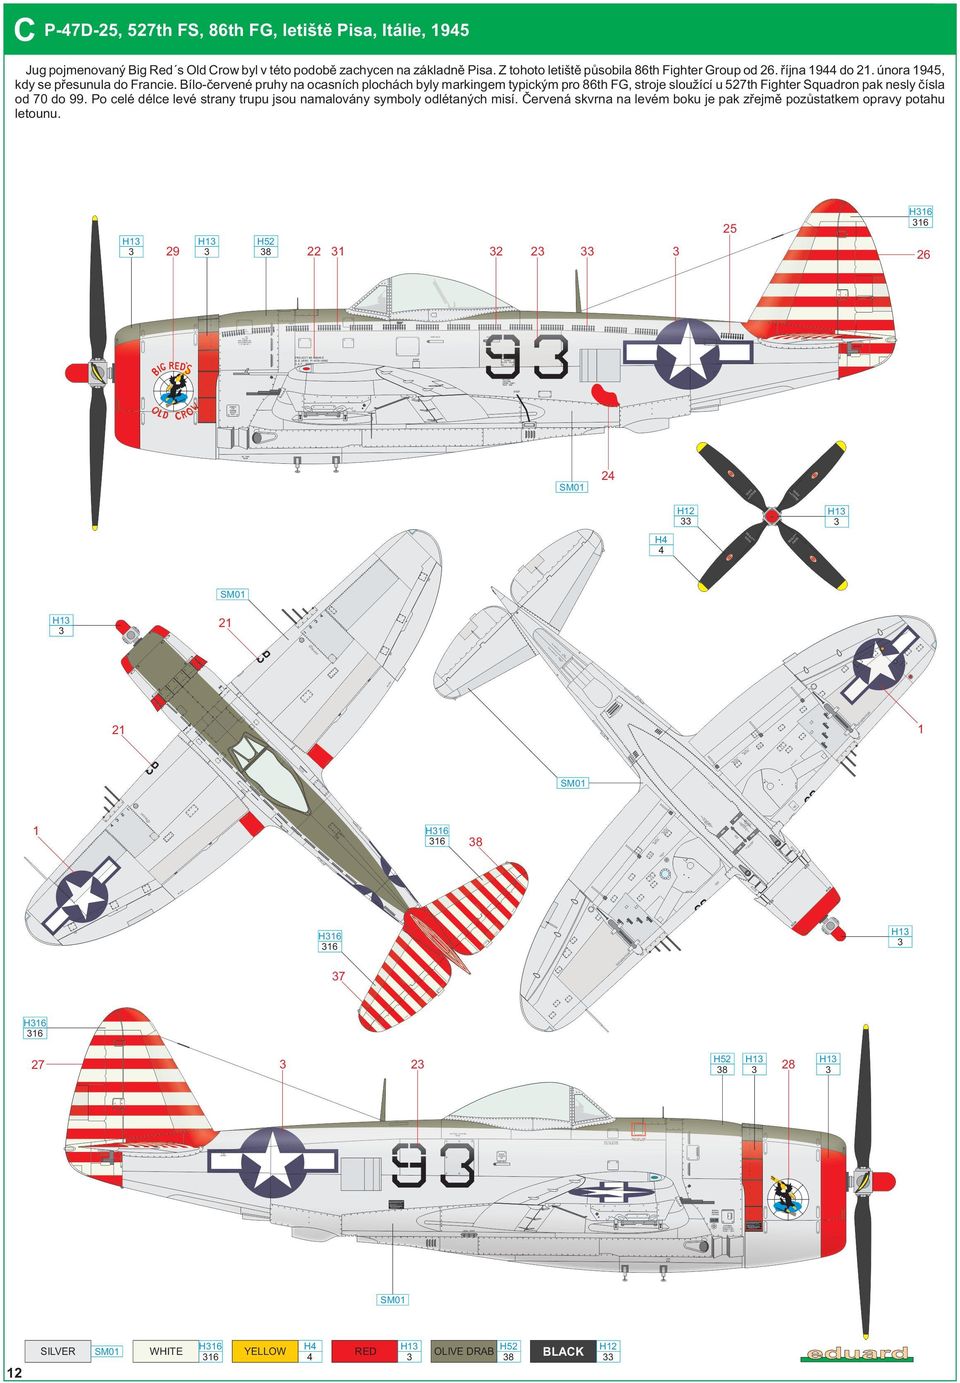 Bílo-červené pruhy na ocasních plochách byly markingem typickým pro 86th FG, stroje sloužící u 527th Fighter Squadron pak nesly čísla od 70 do 99.